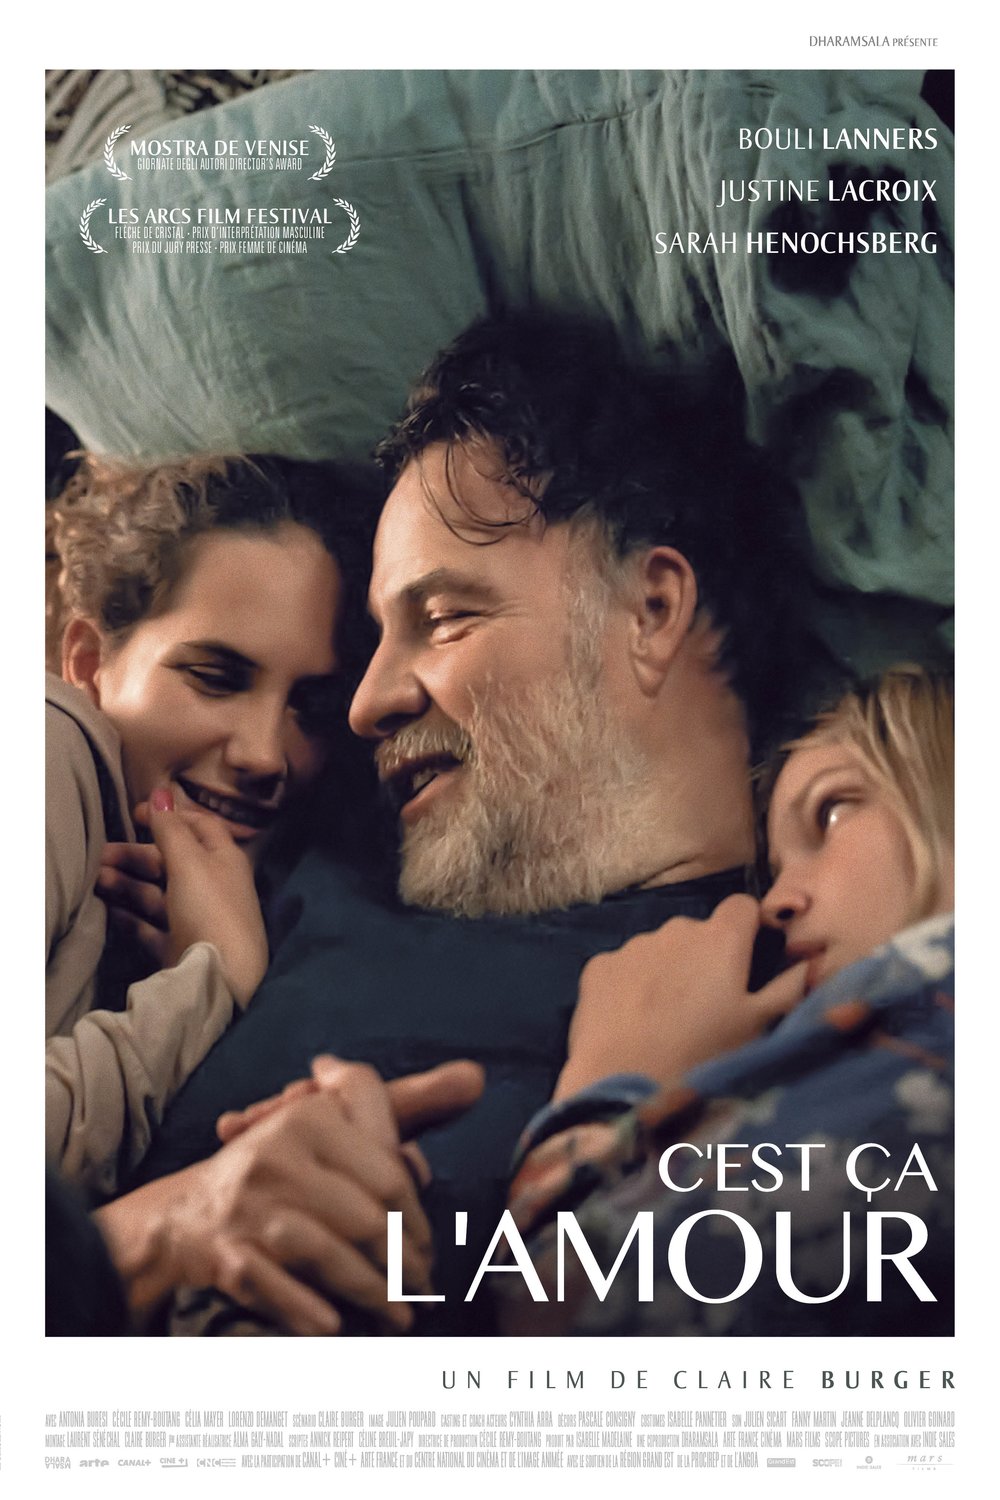 Poster of the movie C'est ça l'amour